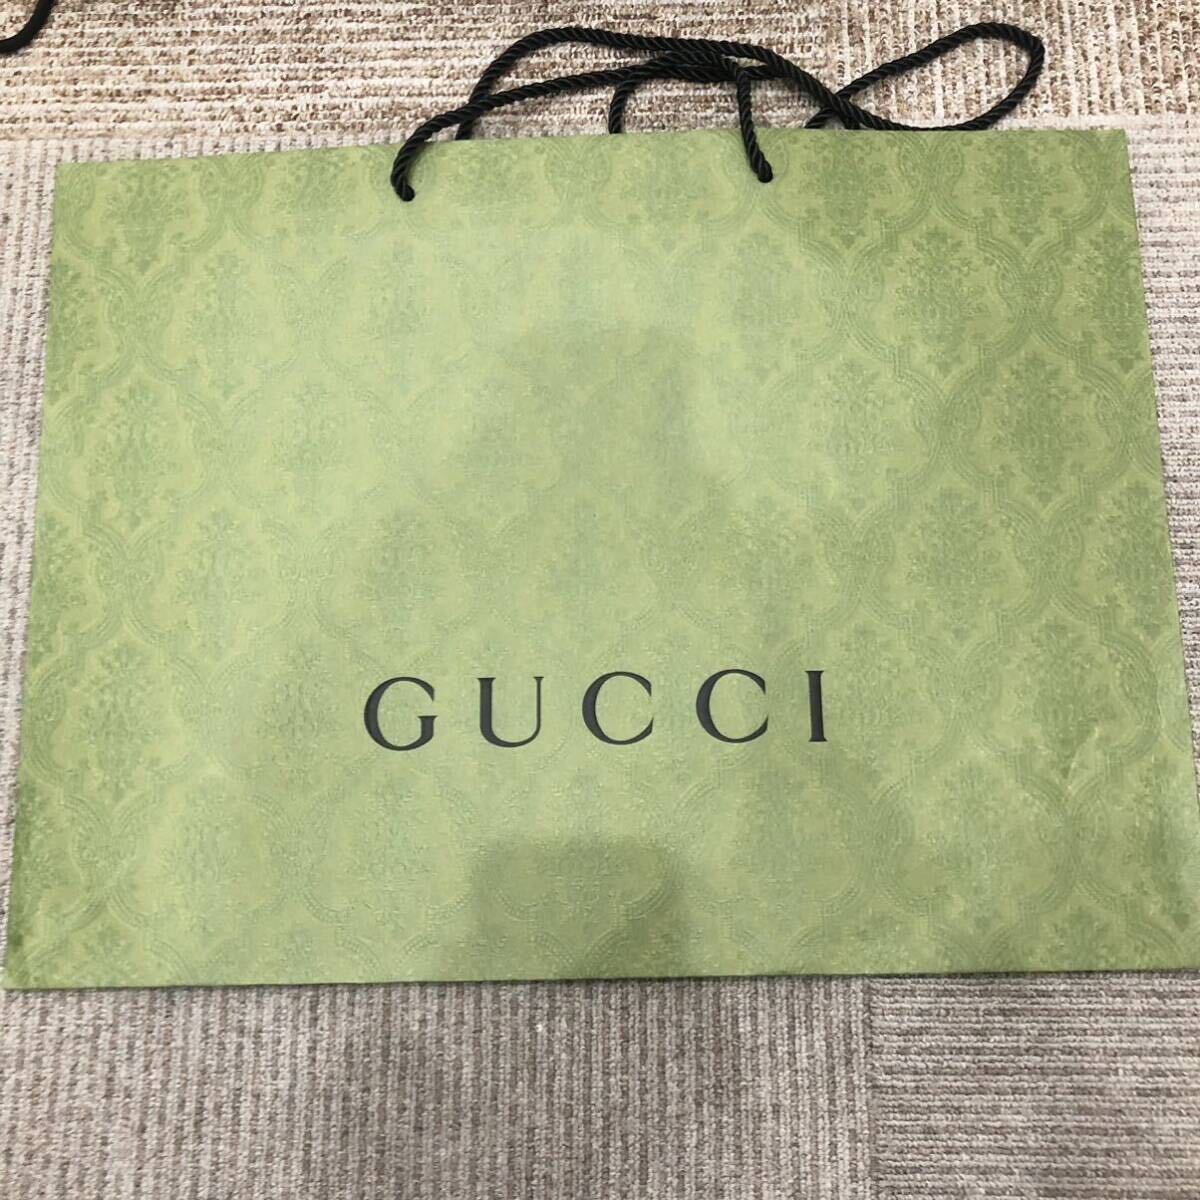 1 иен ~ супер много . суммировать бренд shopa- бумажный пакет общий всего 40 пункт и больше Vuitton Celine солнечный rolan Prada Fendi Gucci и т.п. 